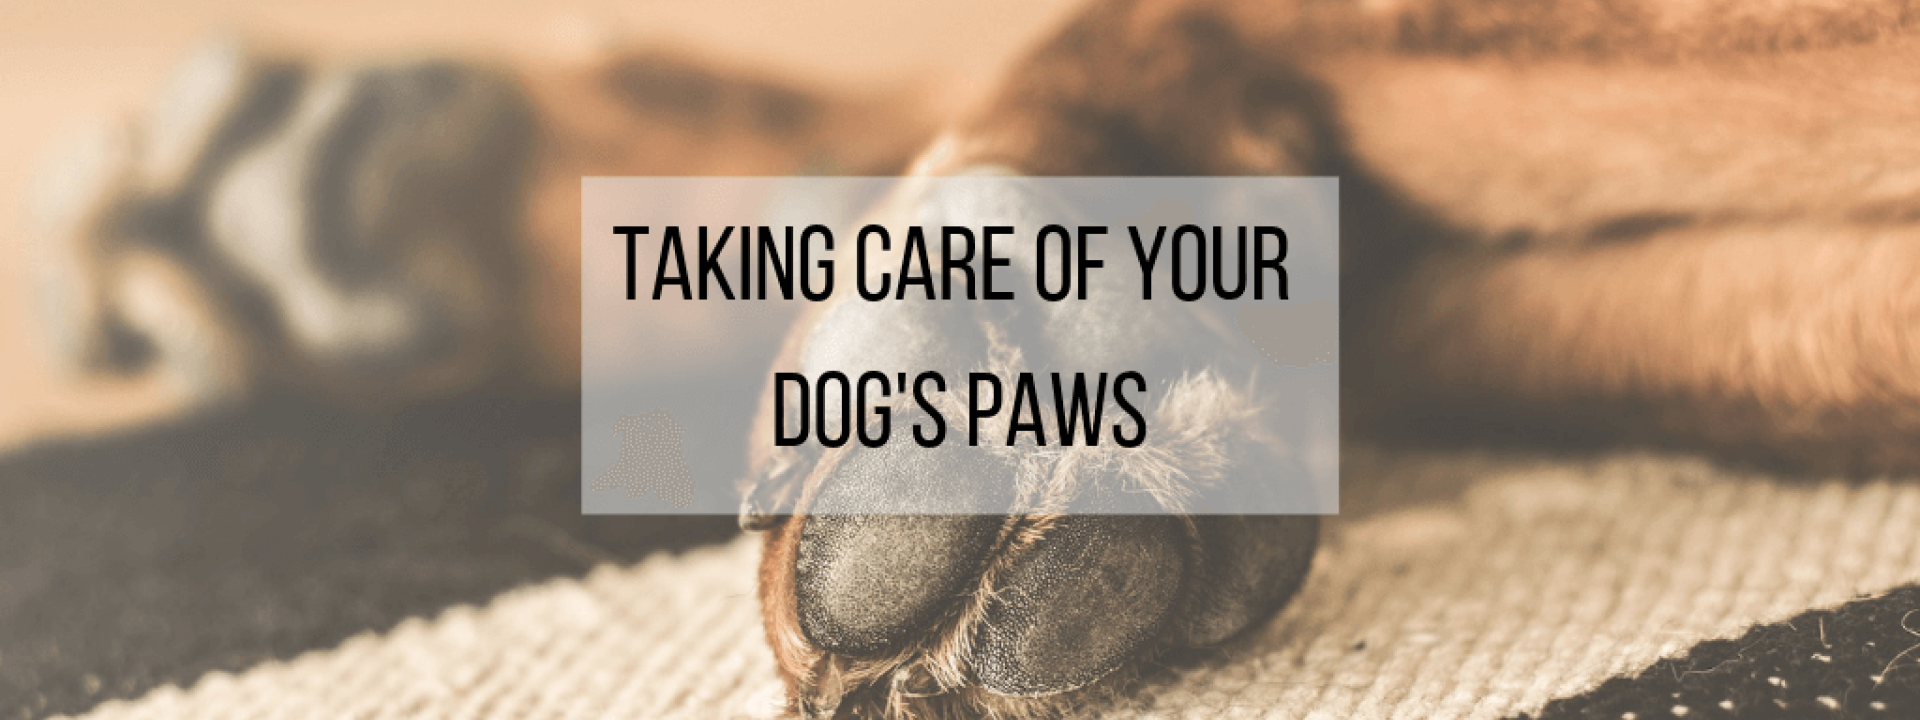 Dog-paws-blog-header.png